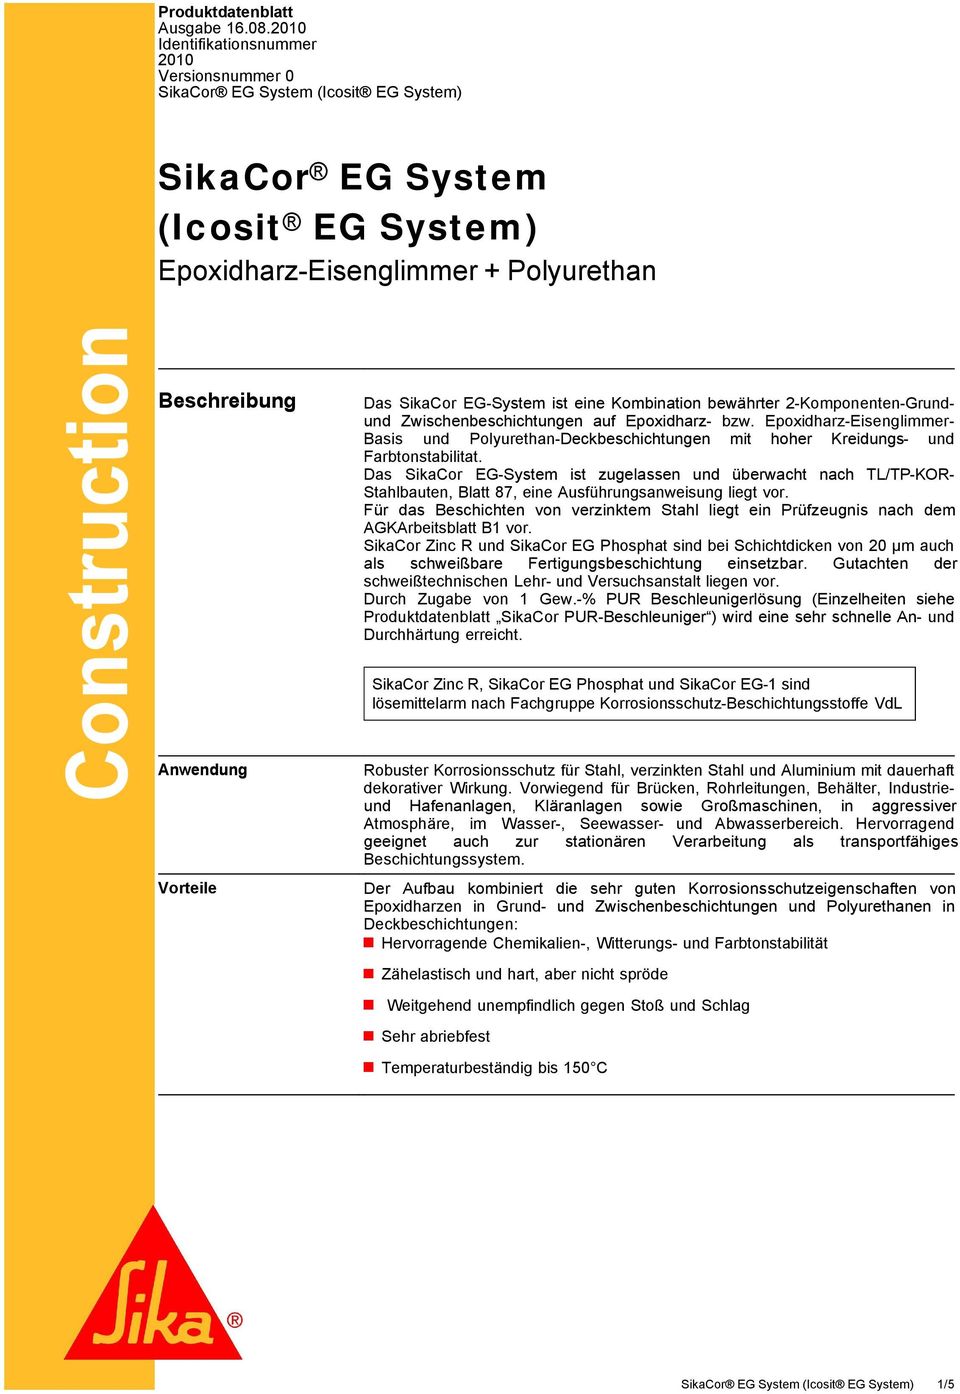 SikaCor EG-System ist eine Kombination bewährter 2-Komponenten-Grundund Zwischenbeschichtungen auf Epoxidharz- bzw.